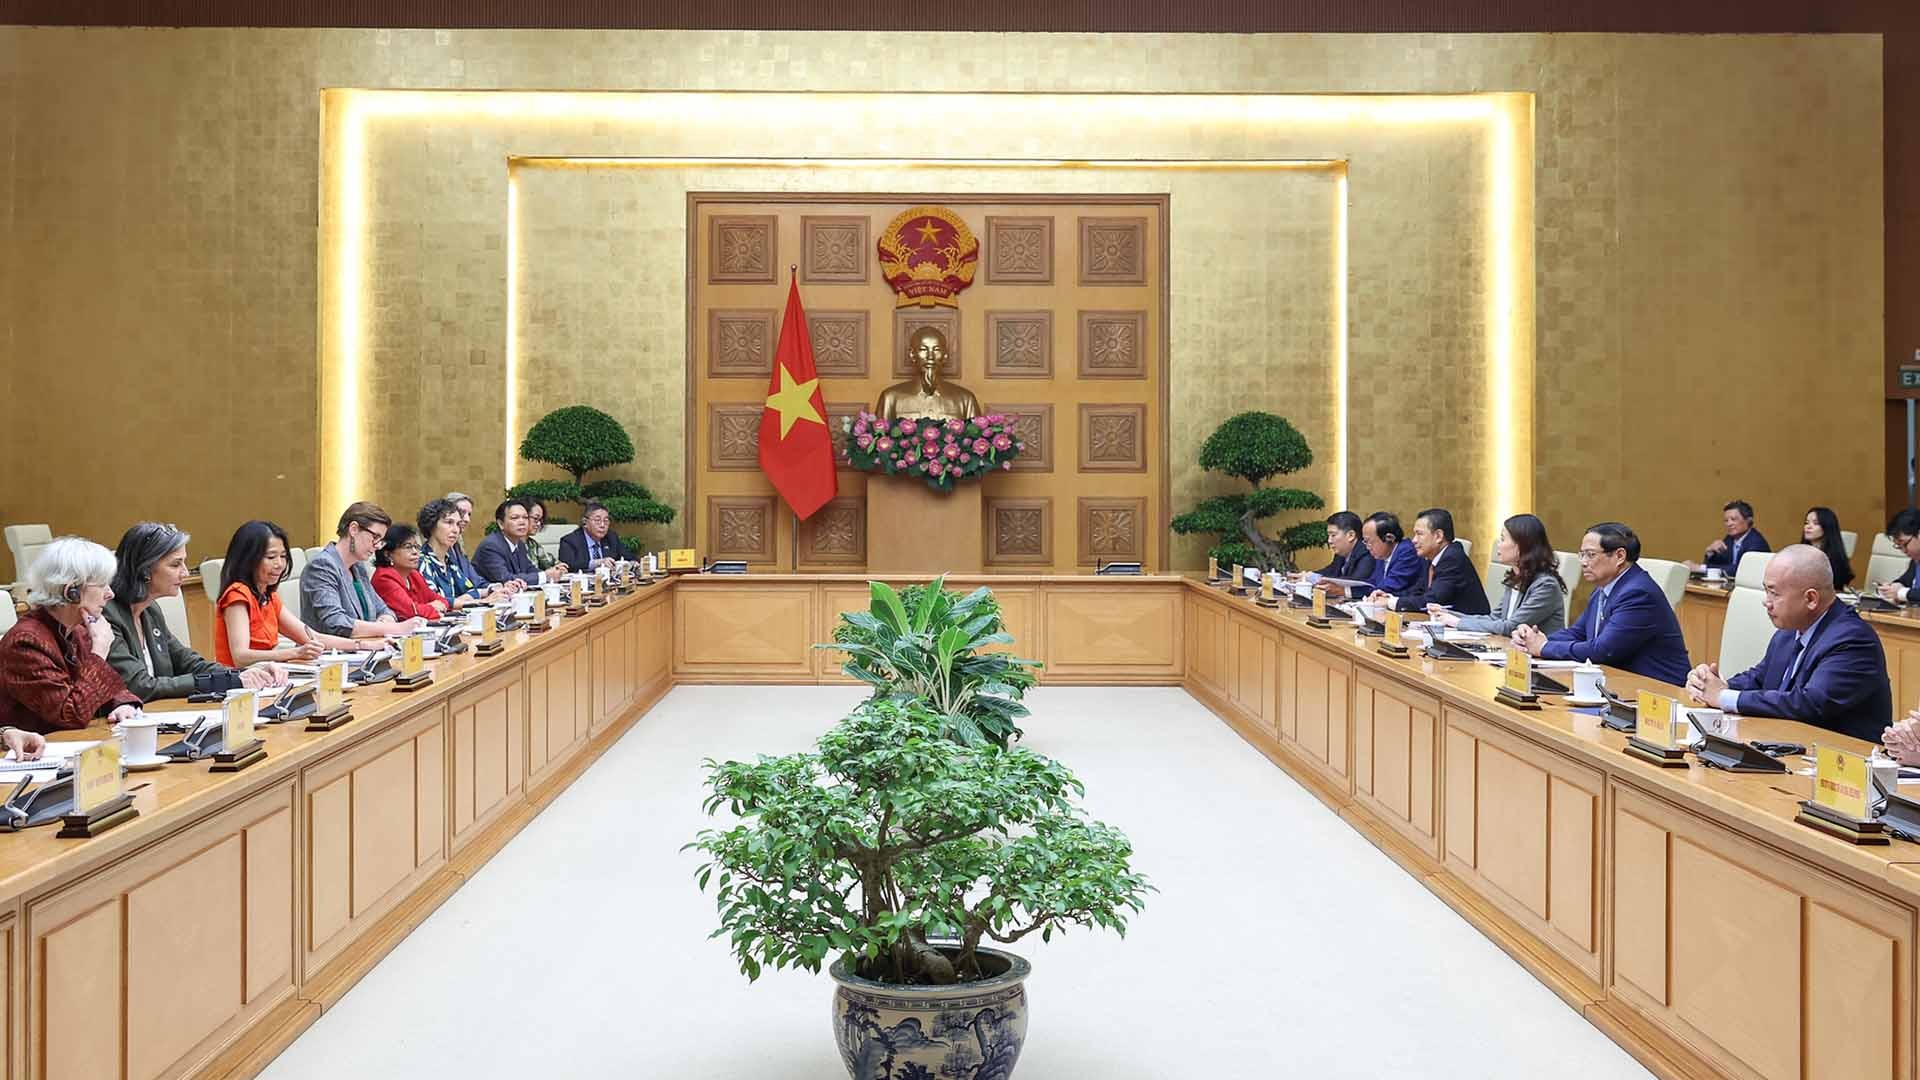 Thủ tướng Phạm Minh Chính tiếp bà Pauline Tamesis, Điều phối viên thường trú của Liên hợp quốc tại Việt Nam và đại diện các tổ chức của Liên hợp quốc tại Việt Nam. (Nguồn: VGP)